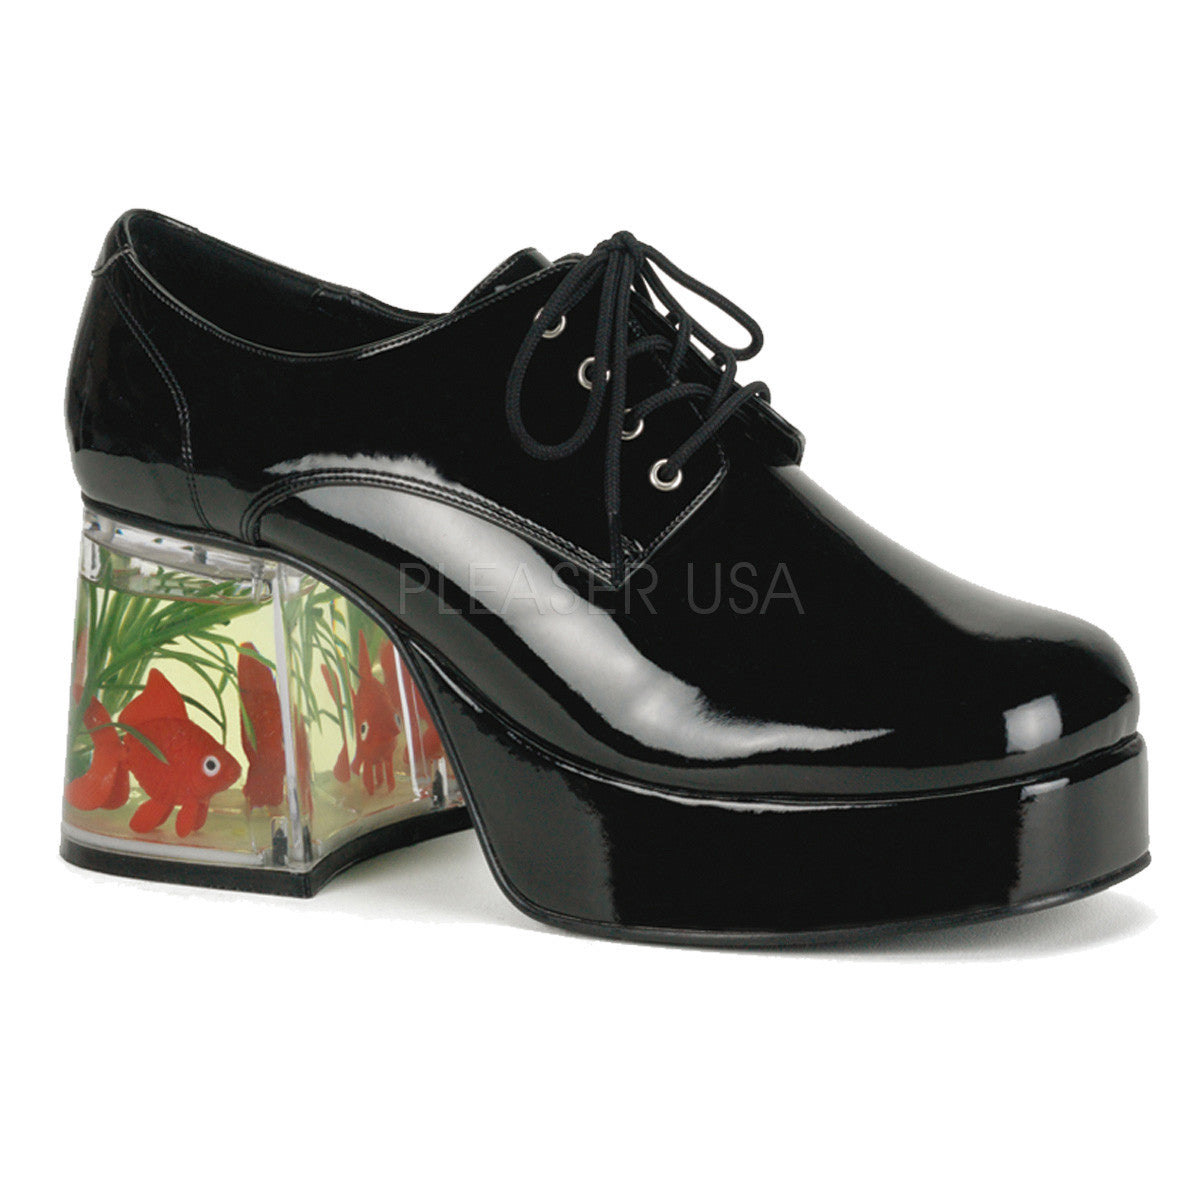 Men's Black Fish Tank Platform Shoes With Fish - Shoecup.com